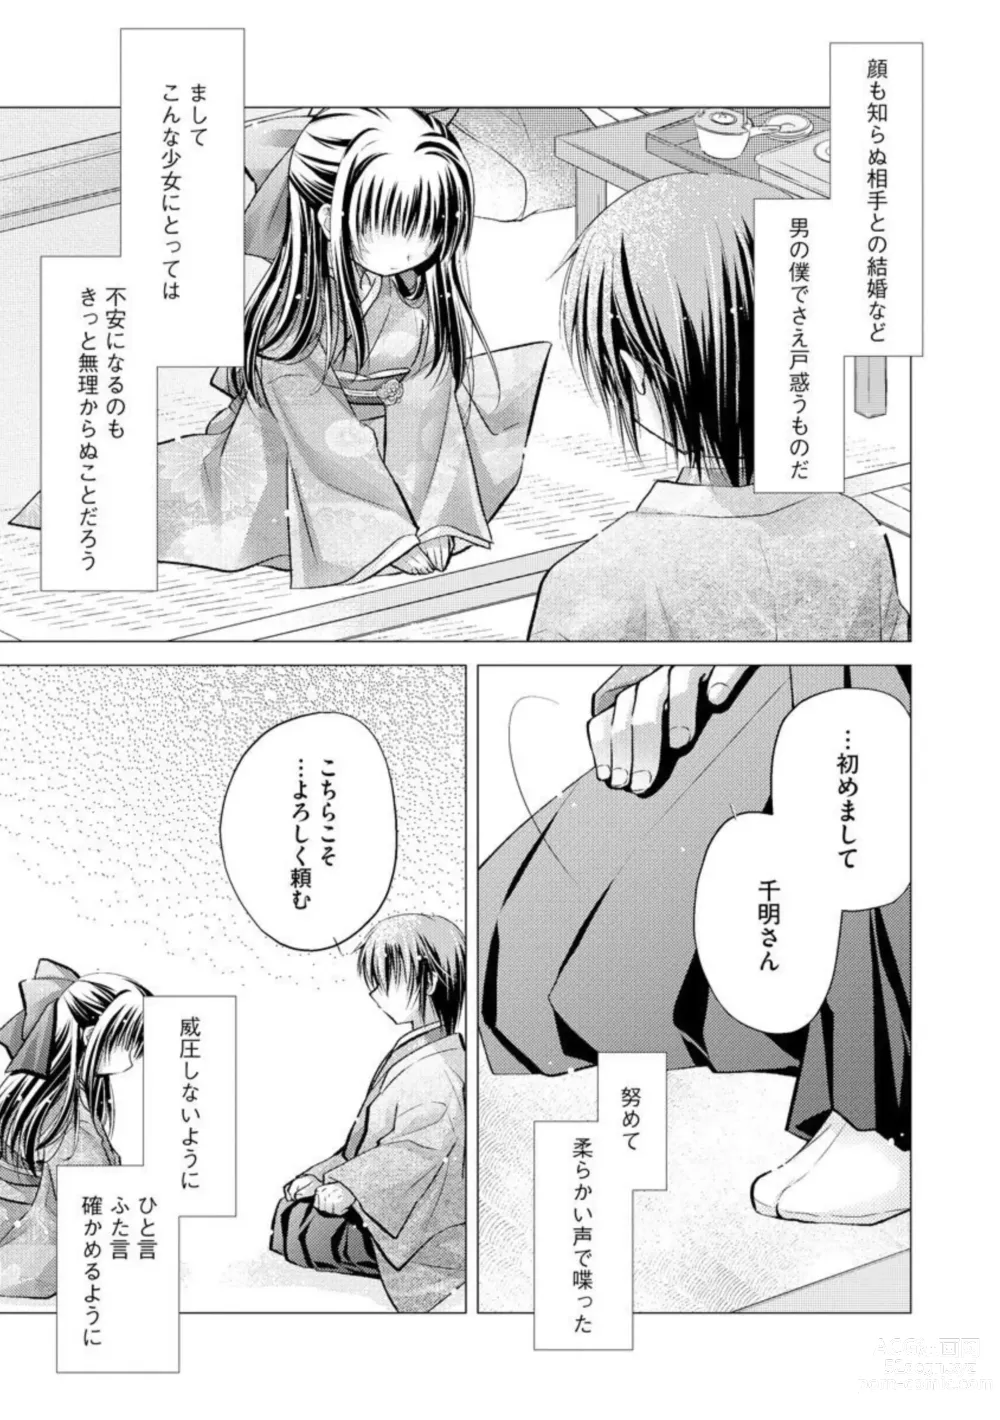 Page 7 of manga Aishin Retoroshizumu 1